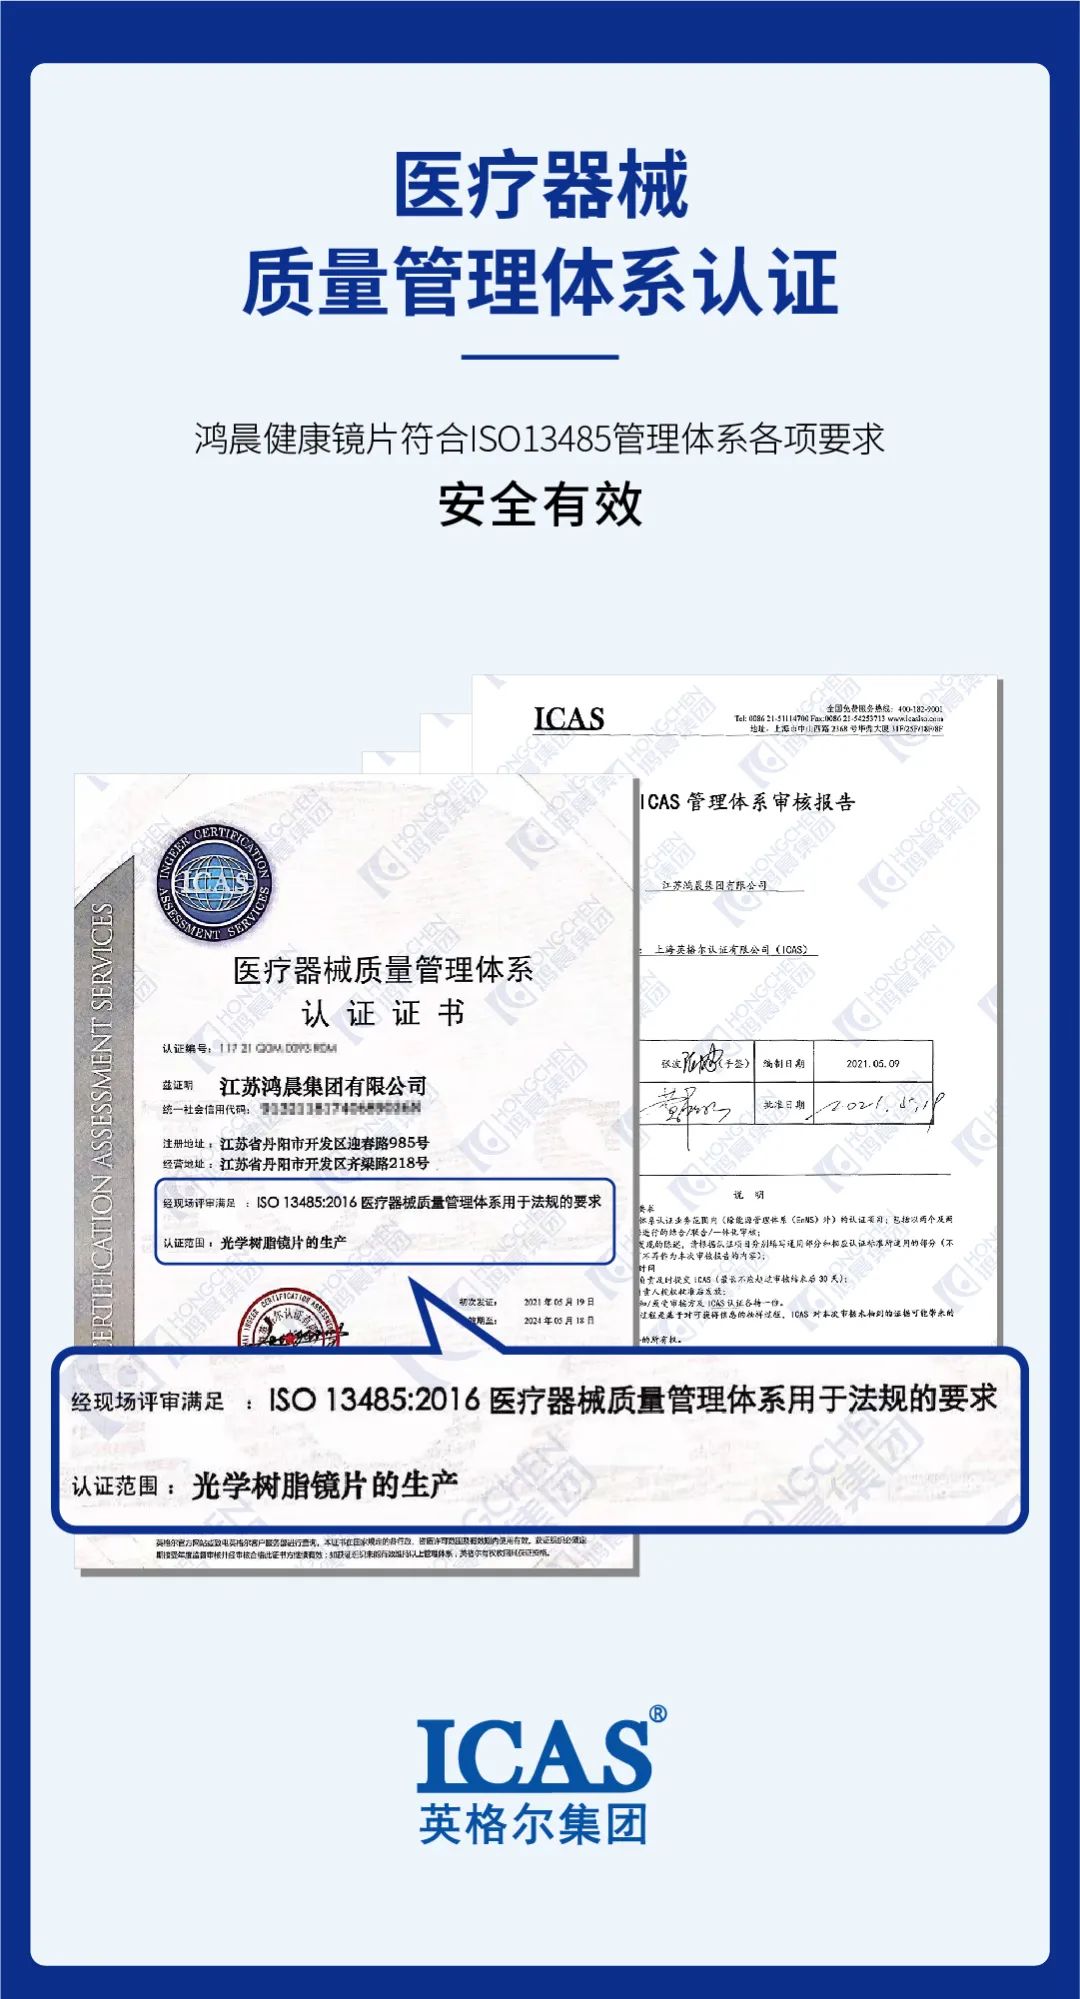 Hongchen-lens won de certificering van het medische veiligheidssysteem